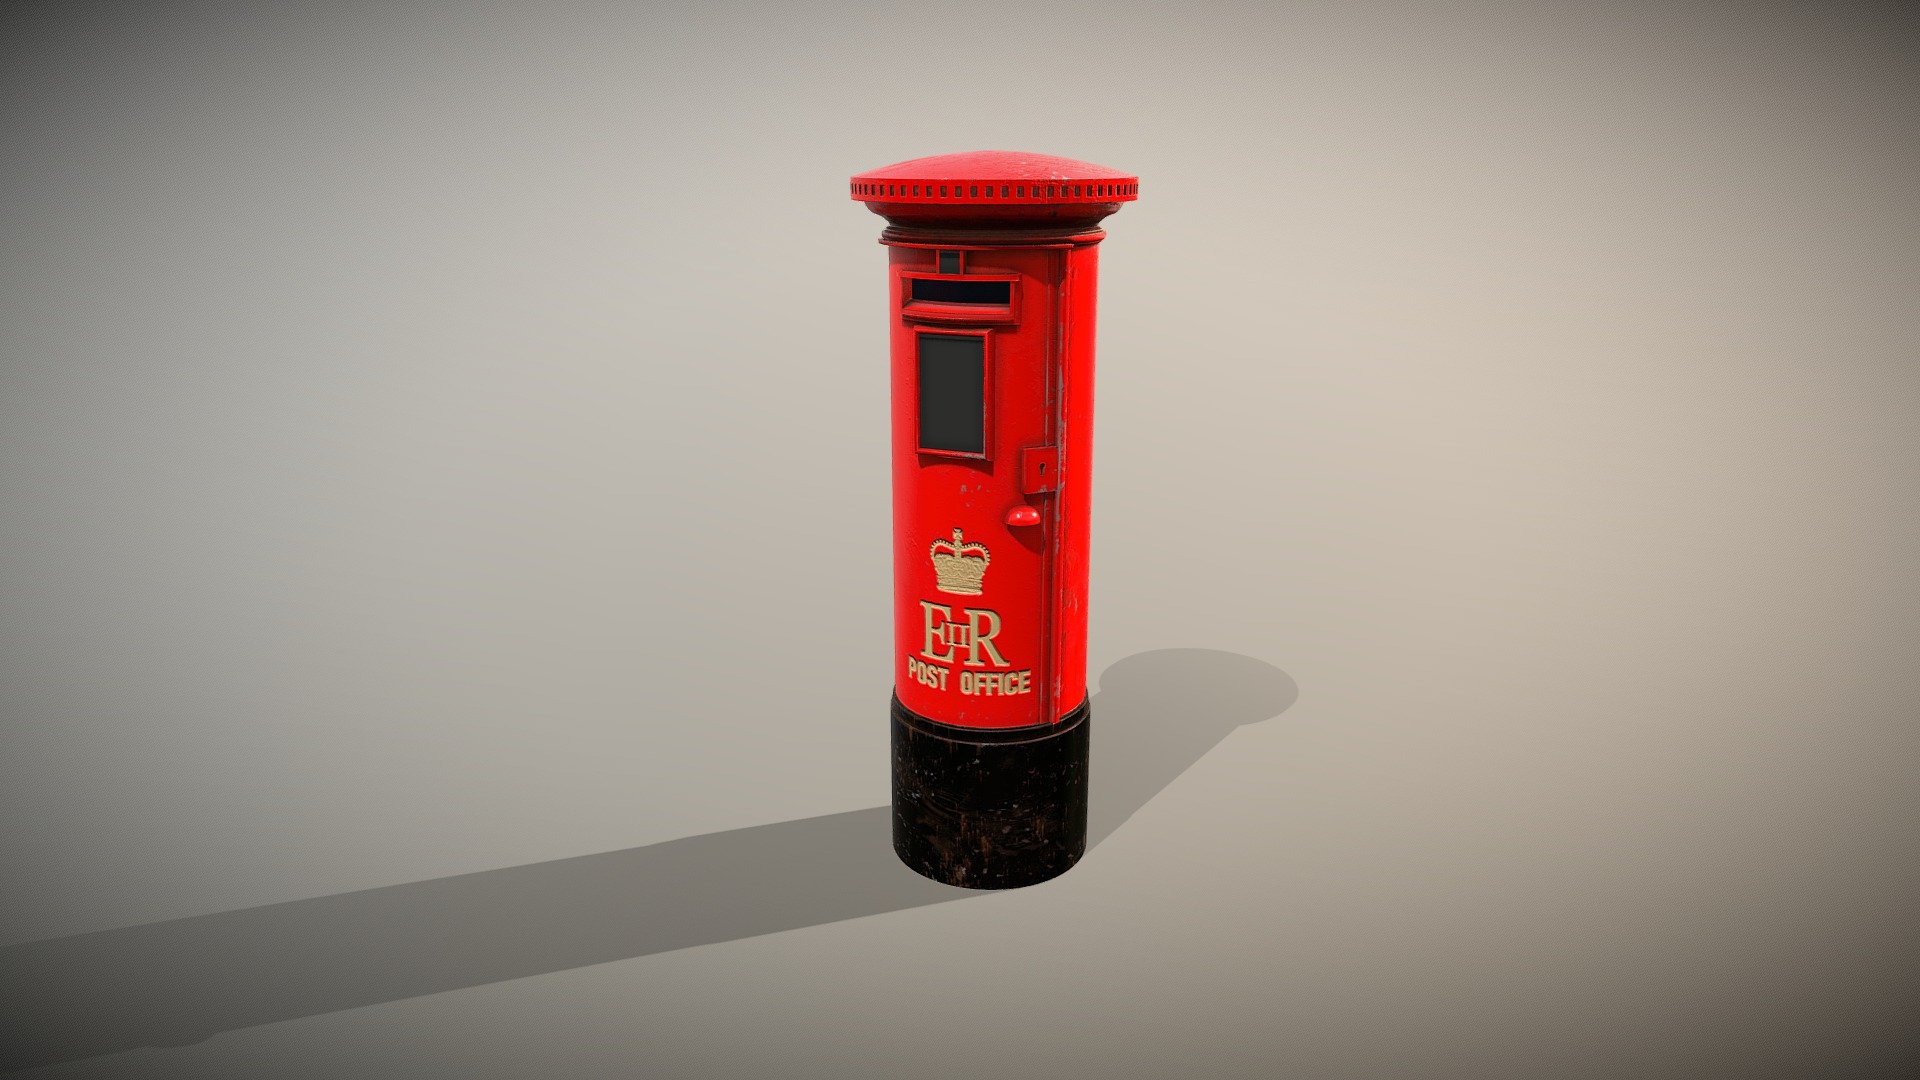 Hong Kong Post Box - Hong Kong Post Box - Buy Royalty Free 3D model by CG Asura (@CG.Asura) 3d model